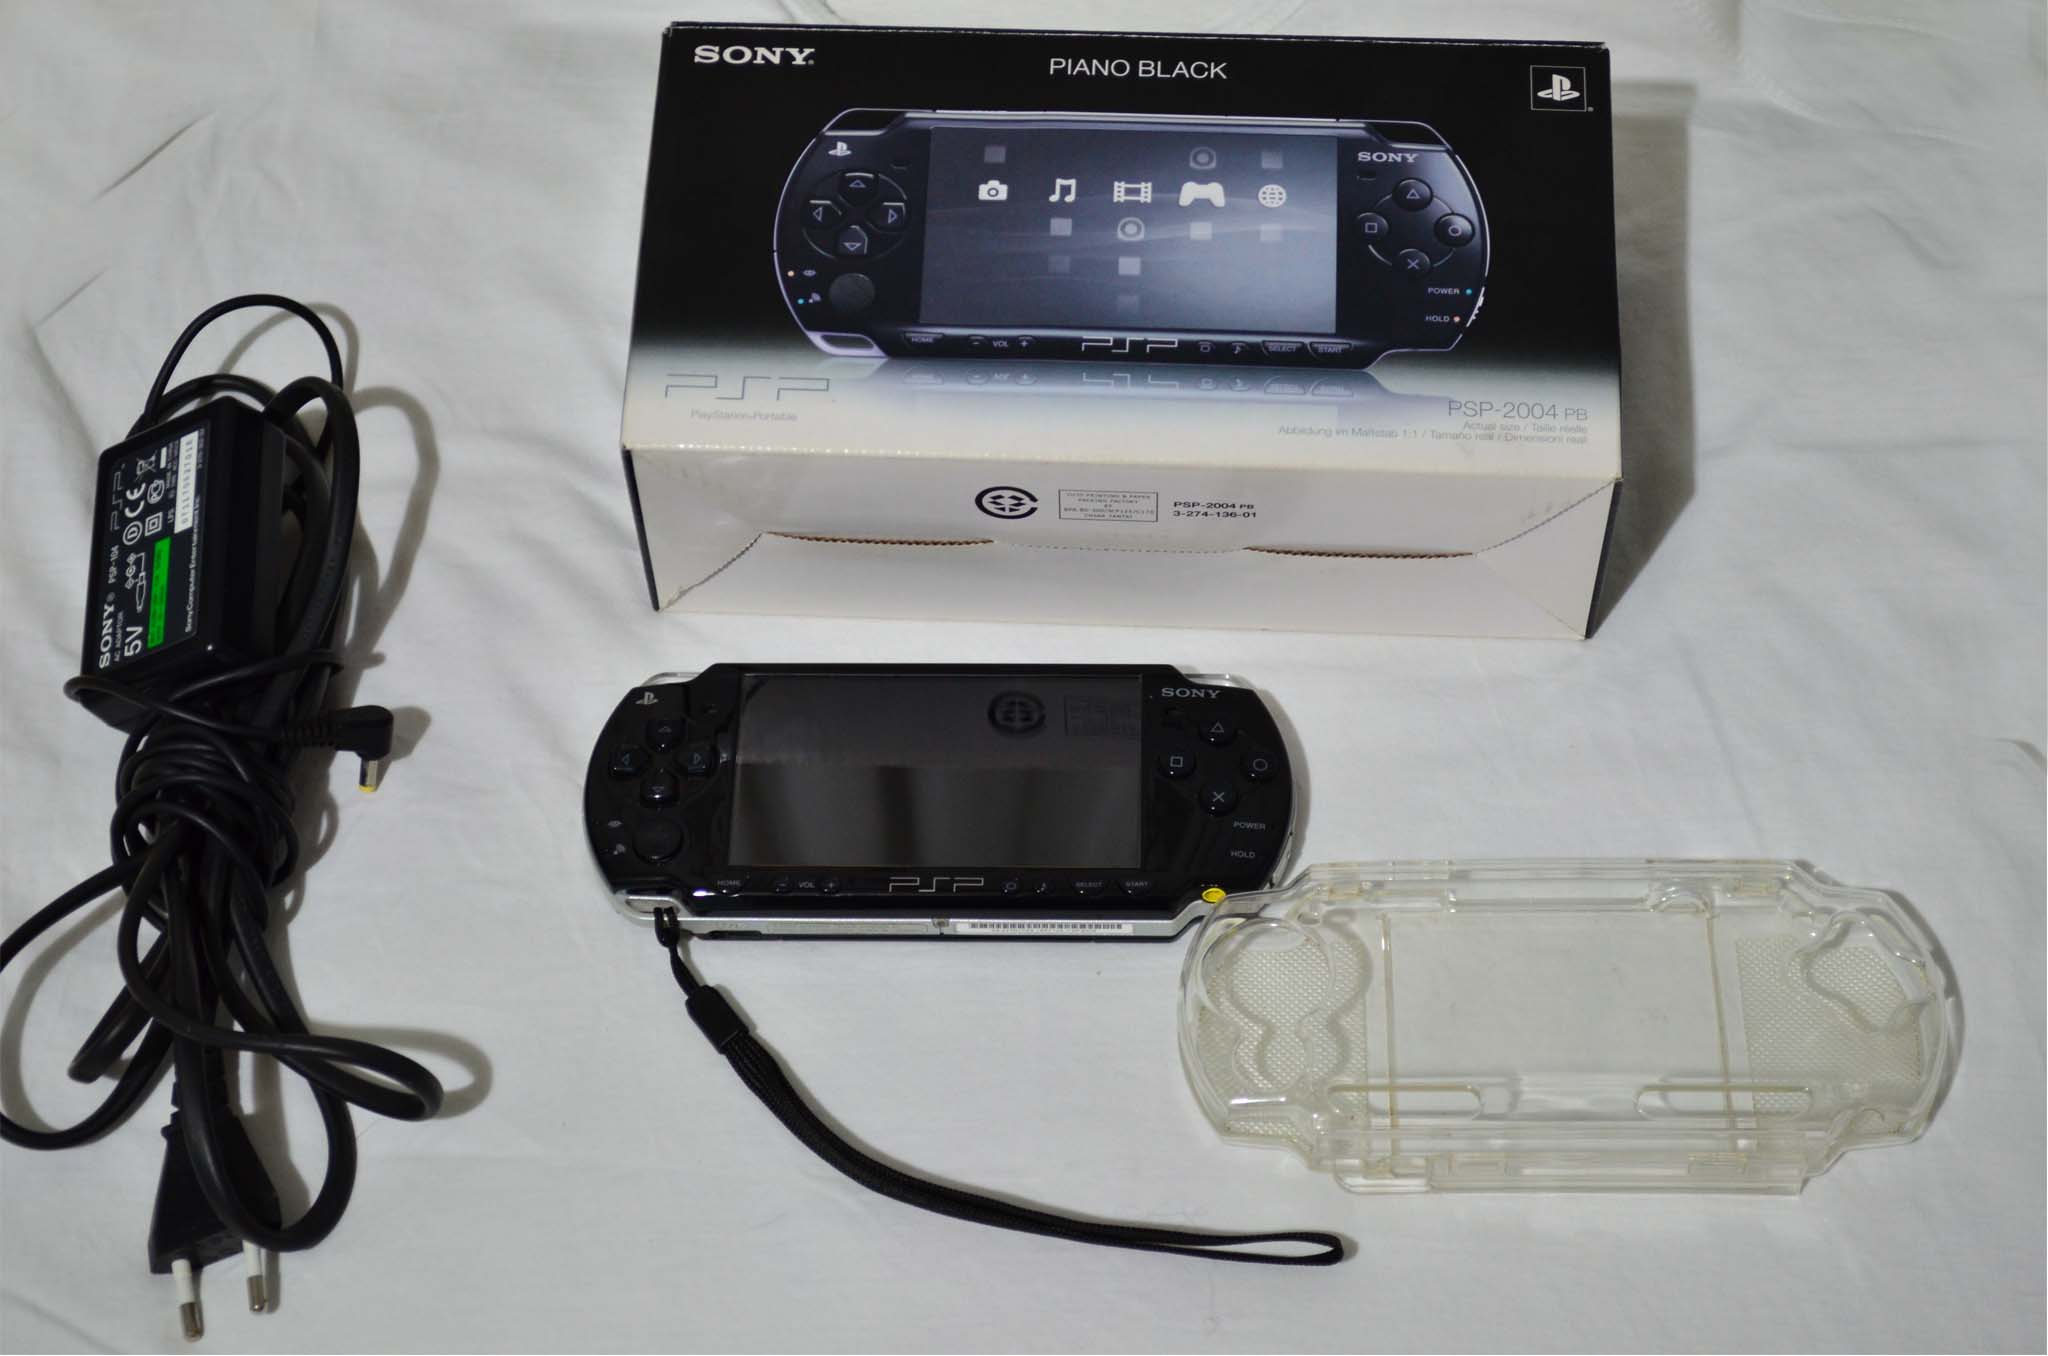  [İSTANBUL] Satılık Kutulu PSP-2004Piano Black Slim 200 TL